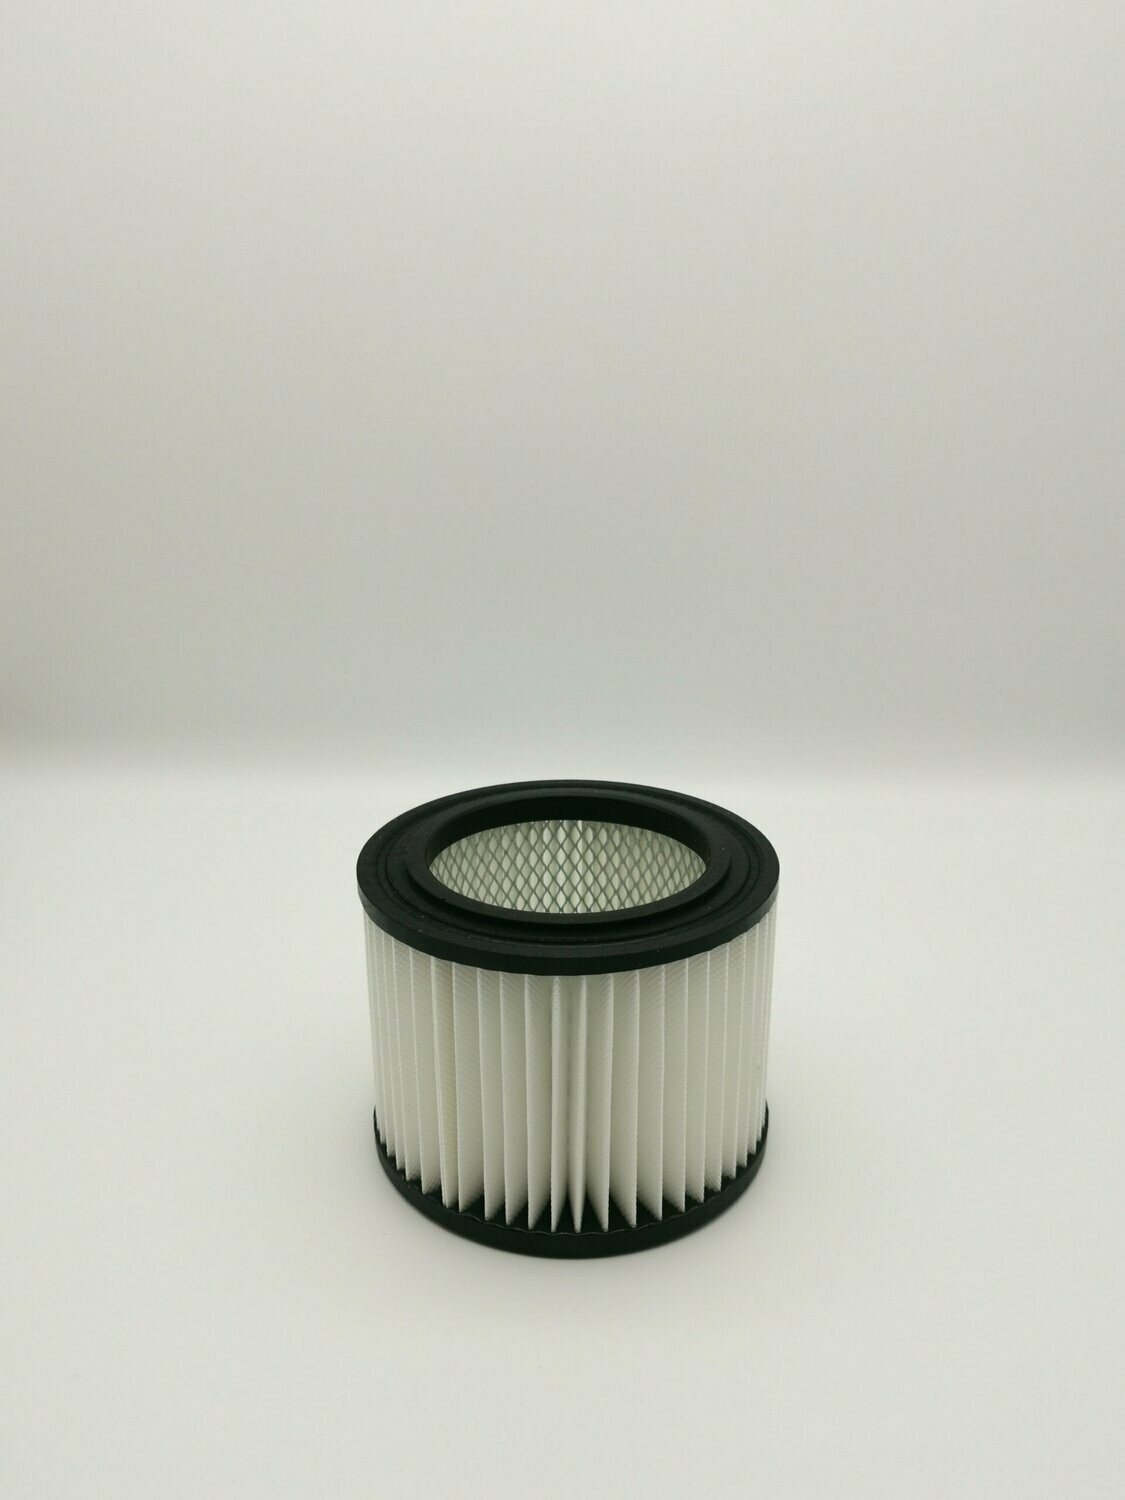 Vacuum cleaner filter for Einhell TC-AV 1200, 126x98,5mm